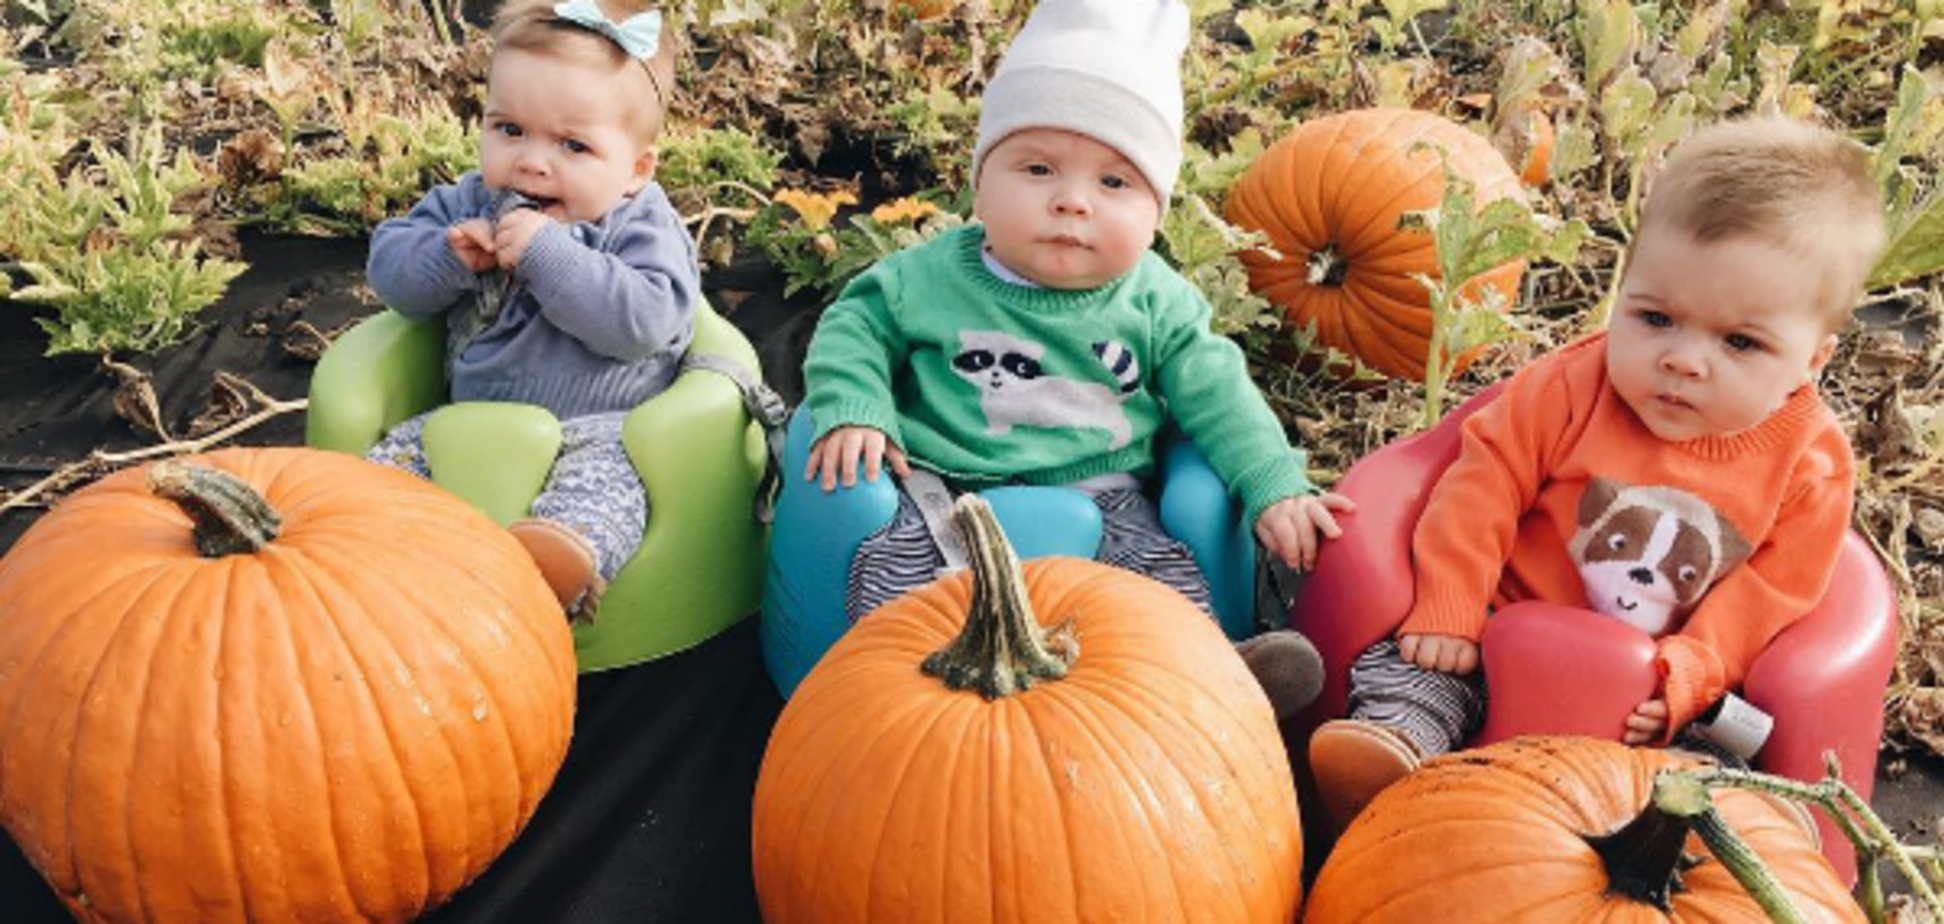 Подготовка к Хэллоуину началась: родители тройняшек нарядили малышей к празднику